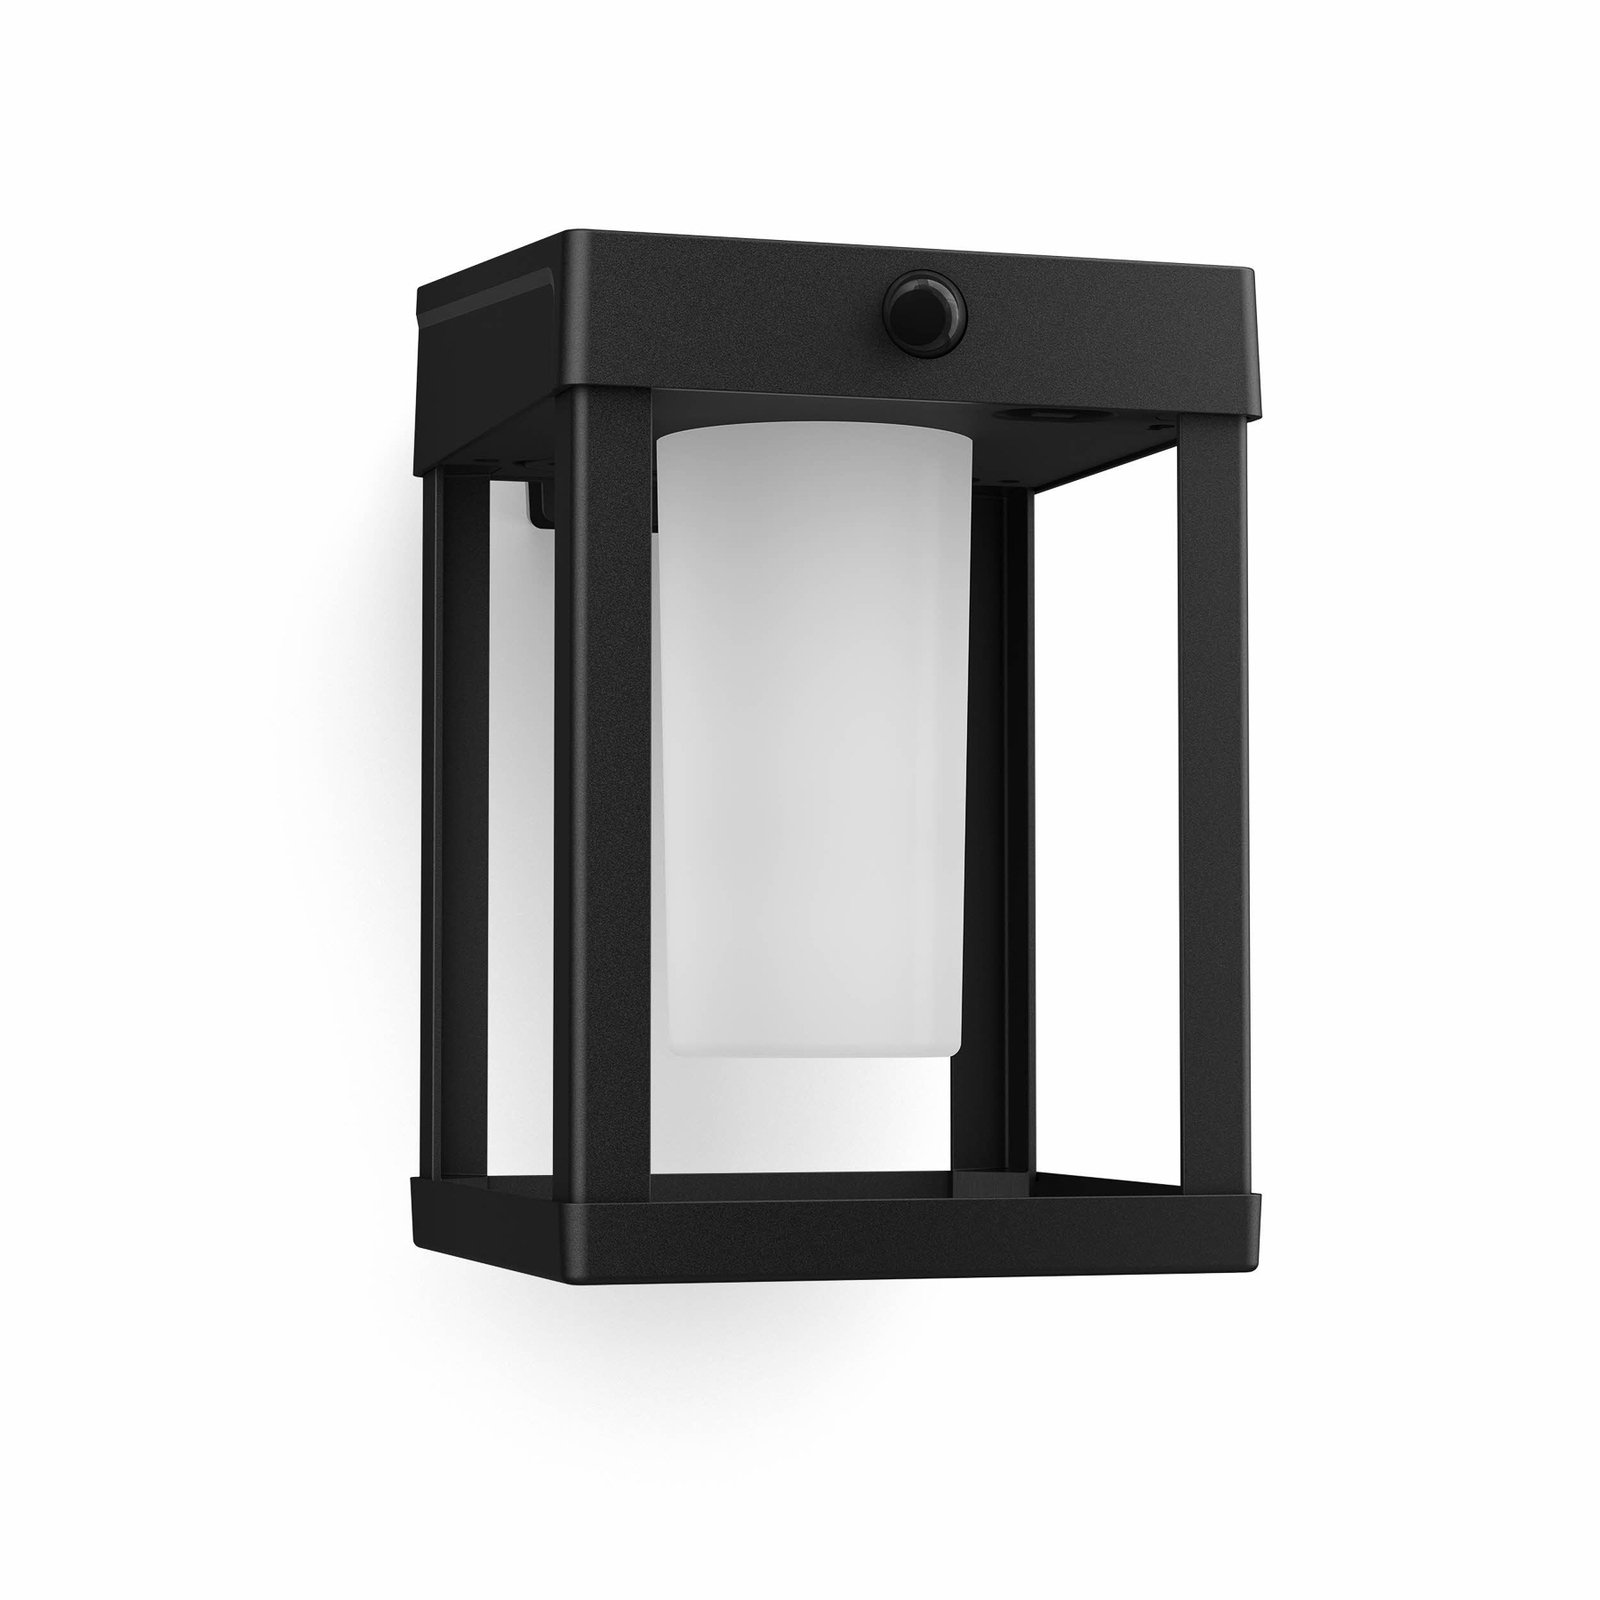 Philips LED соларна лампа за стена Camill, черна/бяла, 14 x 14 cm